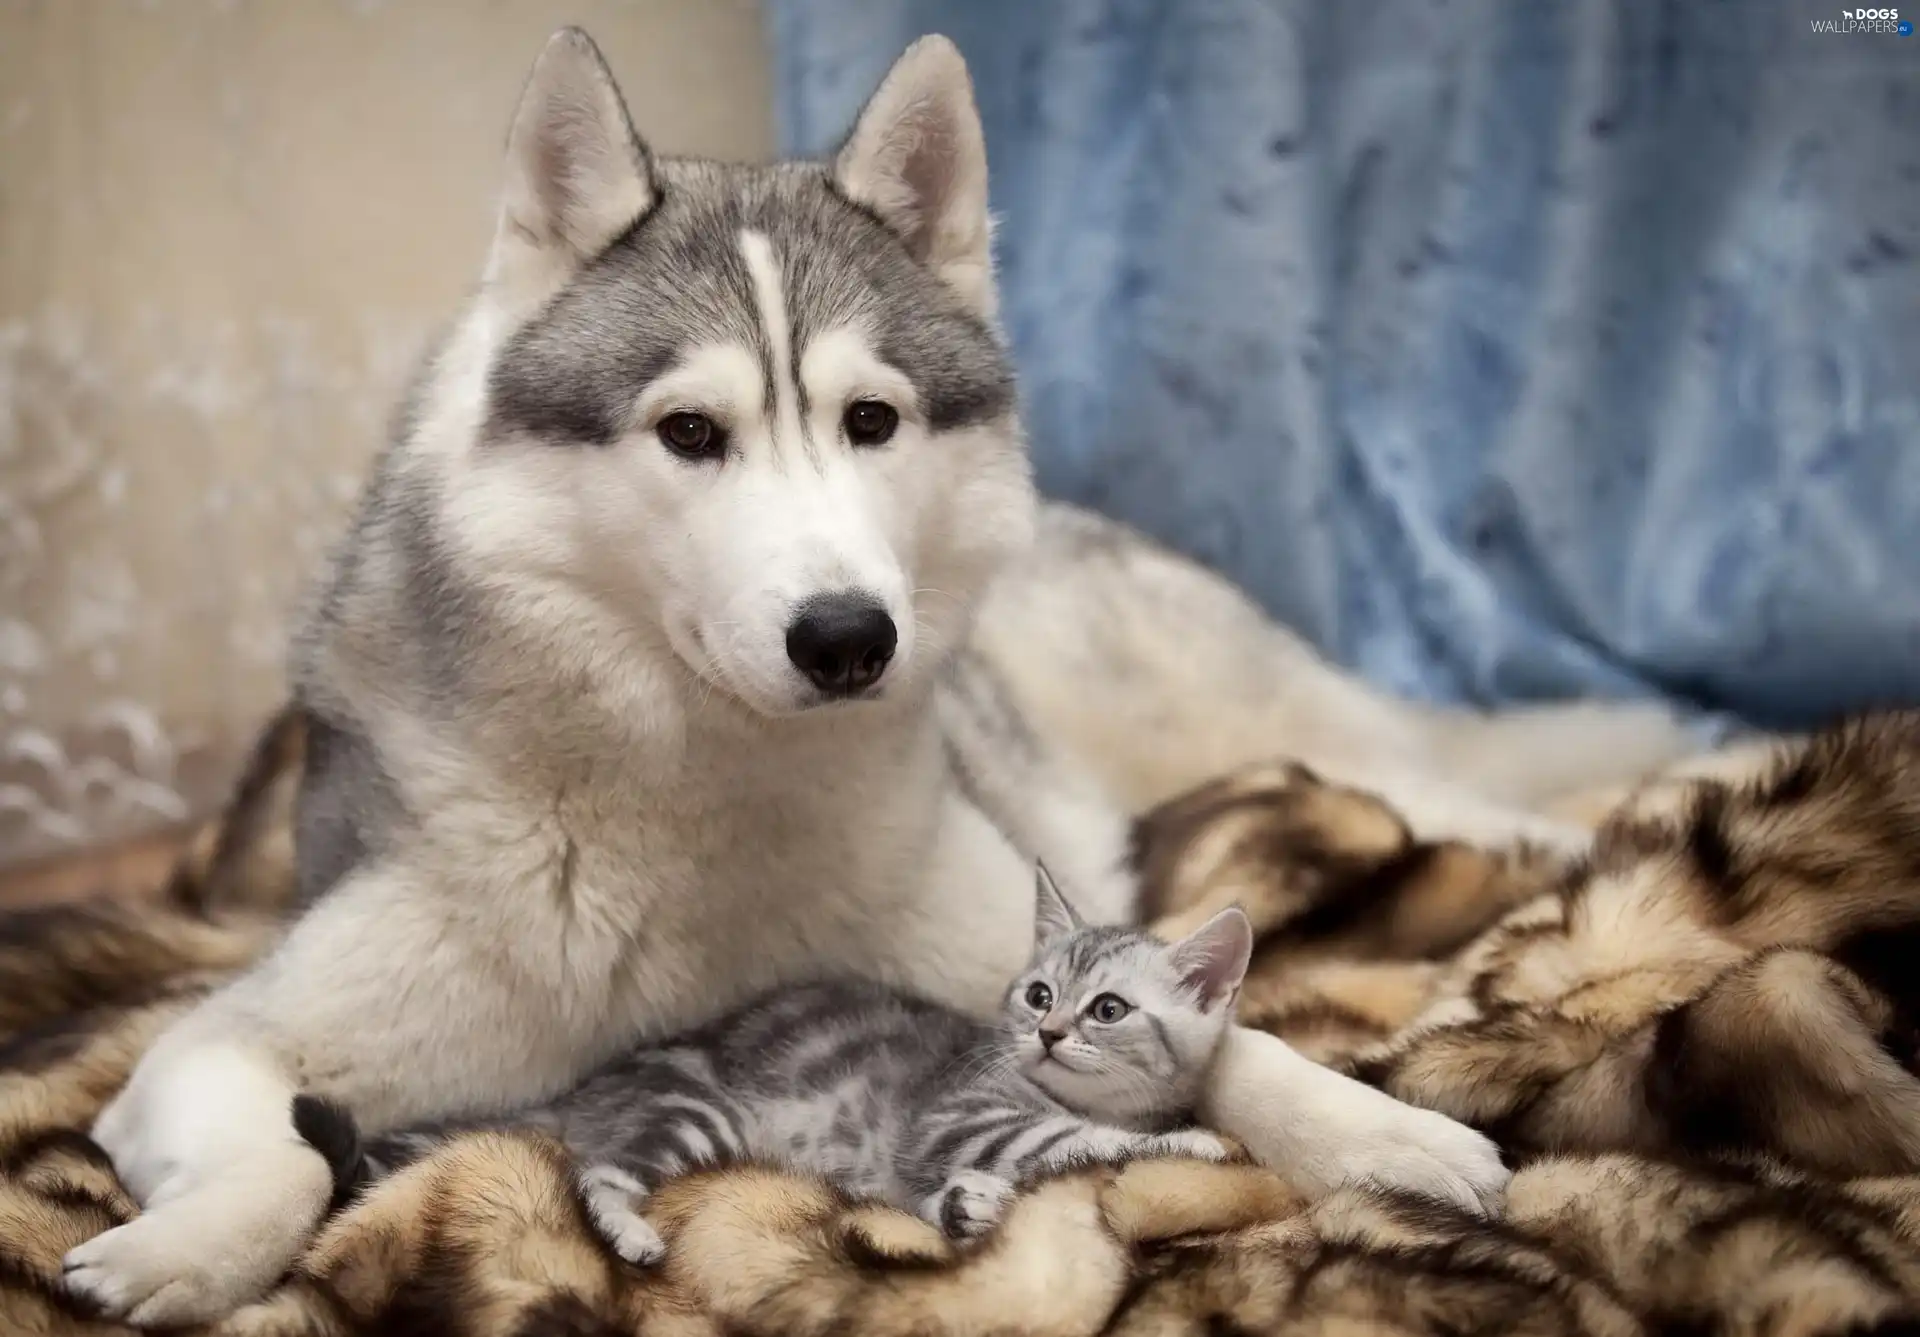 Fur, Siberian Husky, cat